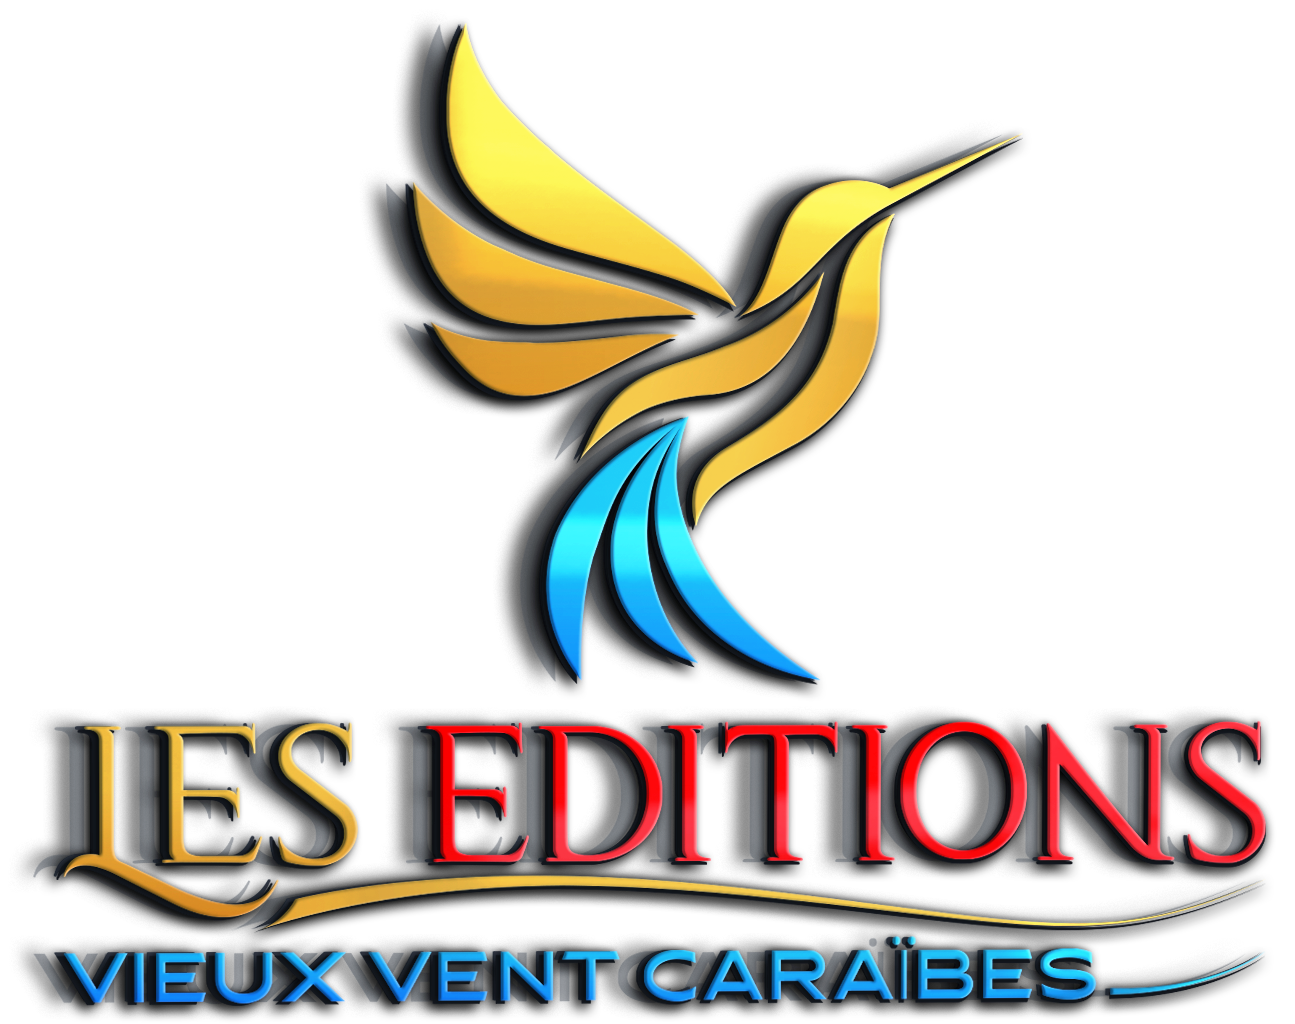 Les Éditions Vieux Vent Caraïbes, Caribbean culture and literature, history, poetry, fiction